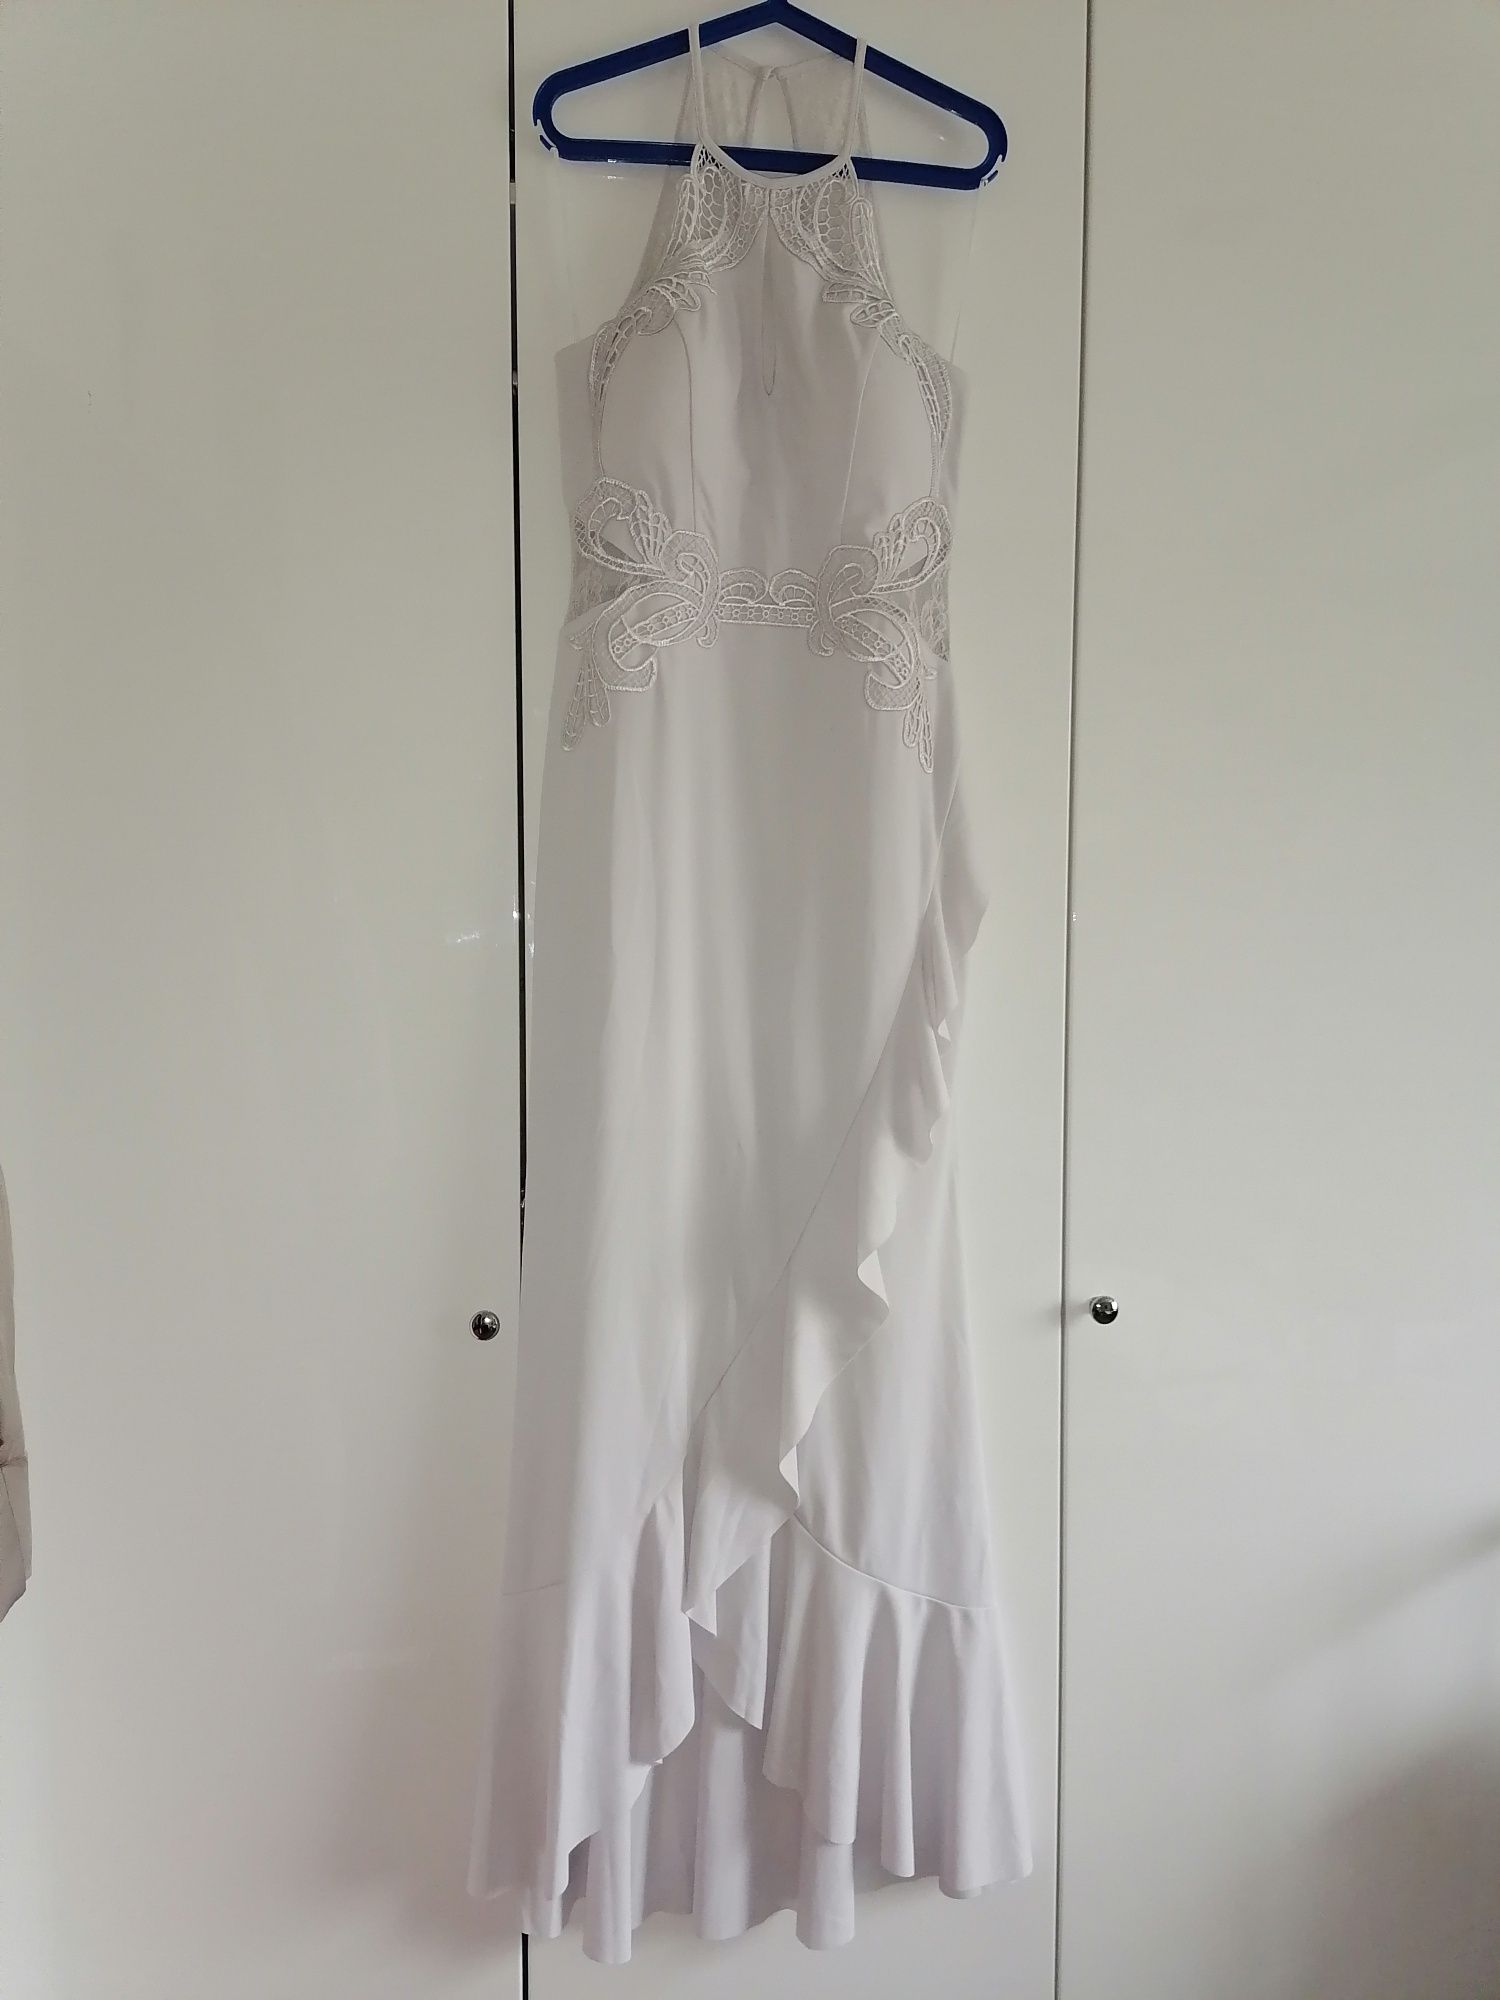 Nowa sukienka elegancka koronka haft ślub wesele przyjęcie 40 L 42 xl